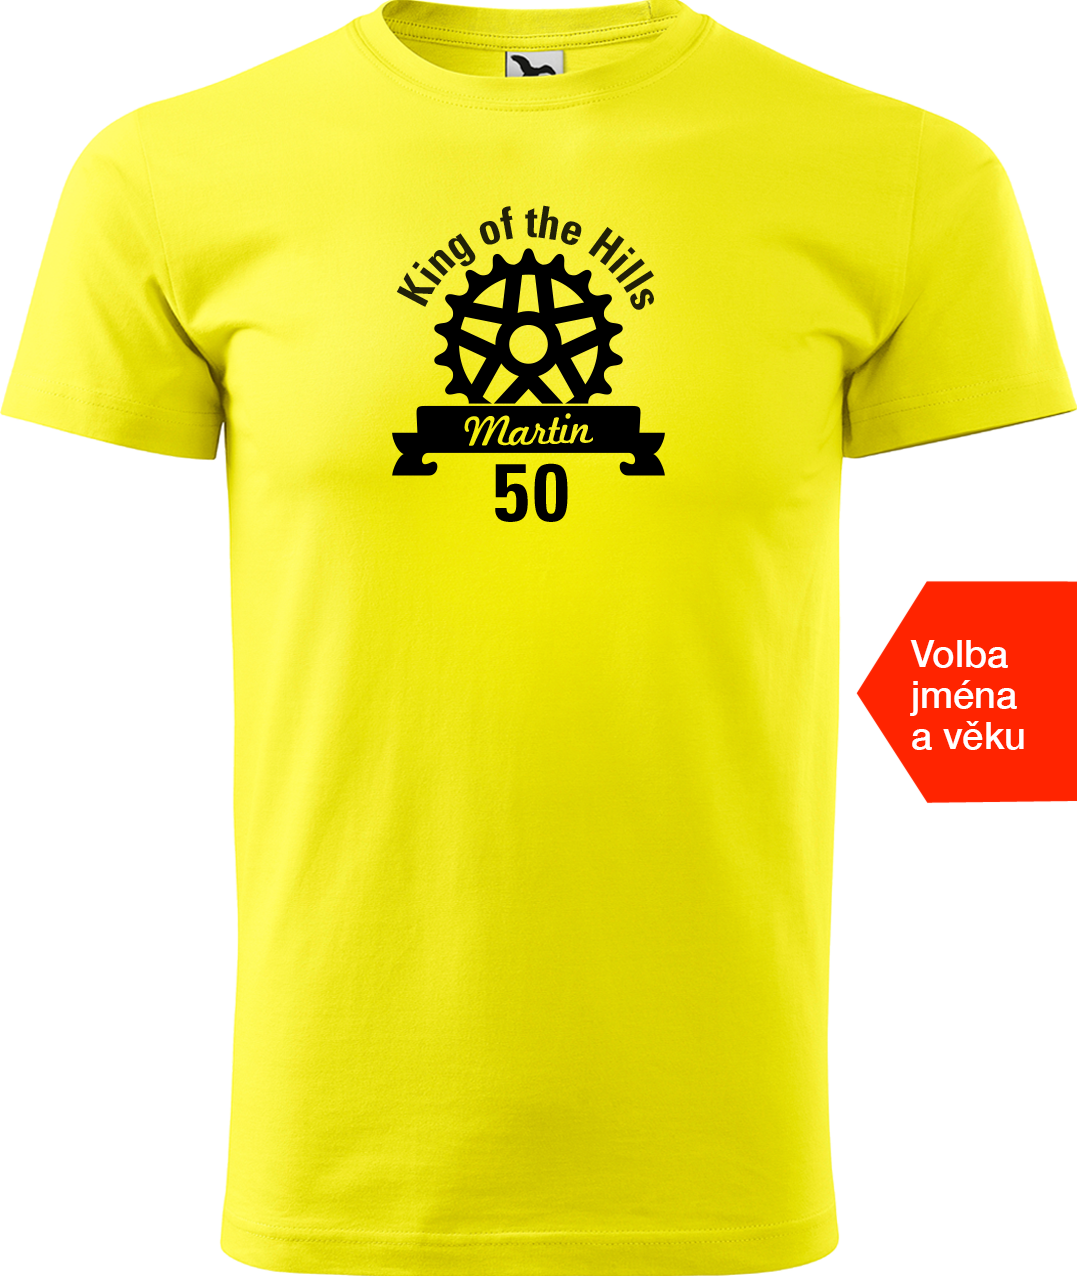 Pánské tričko pro cyklistu se jménem - King of the Hills Velikost: L, Barva: Žlutá (04)